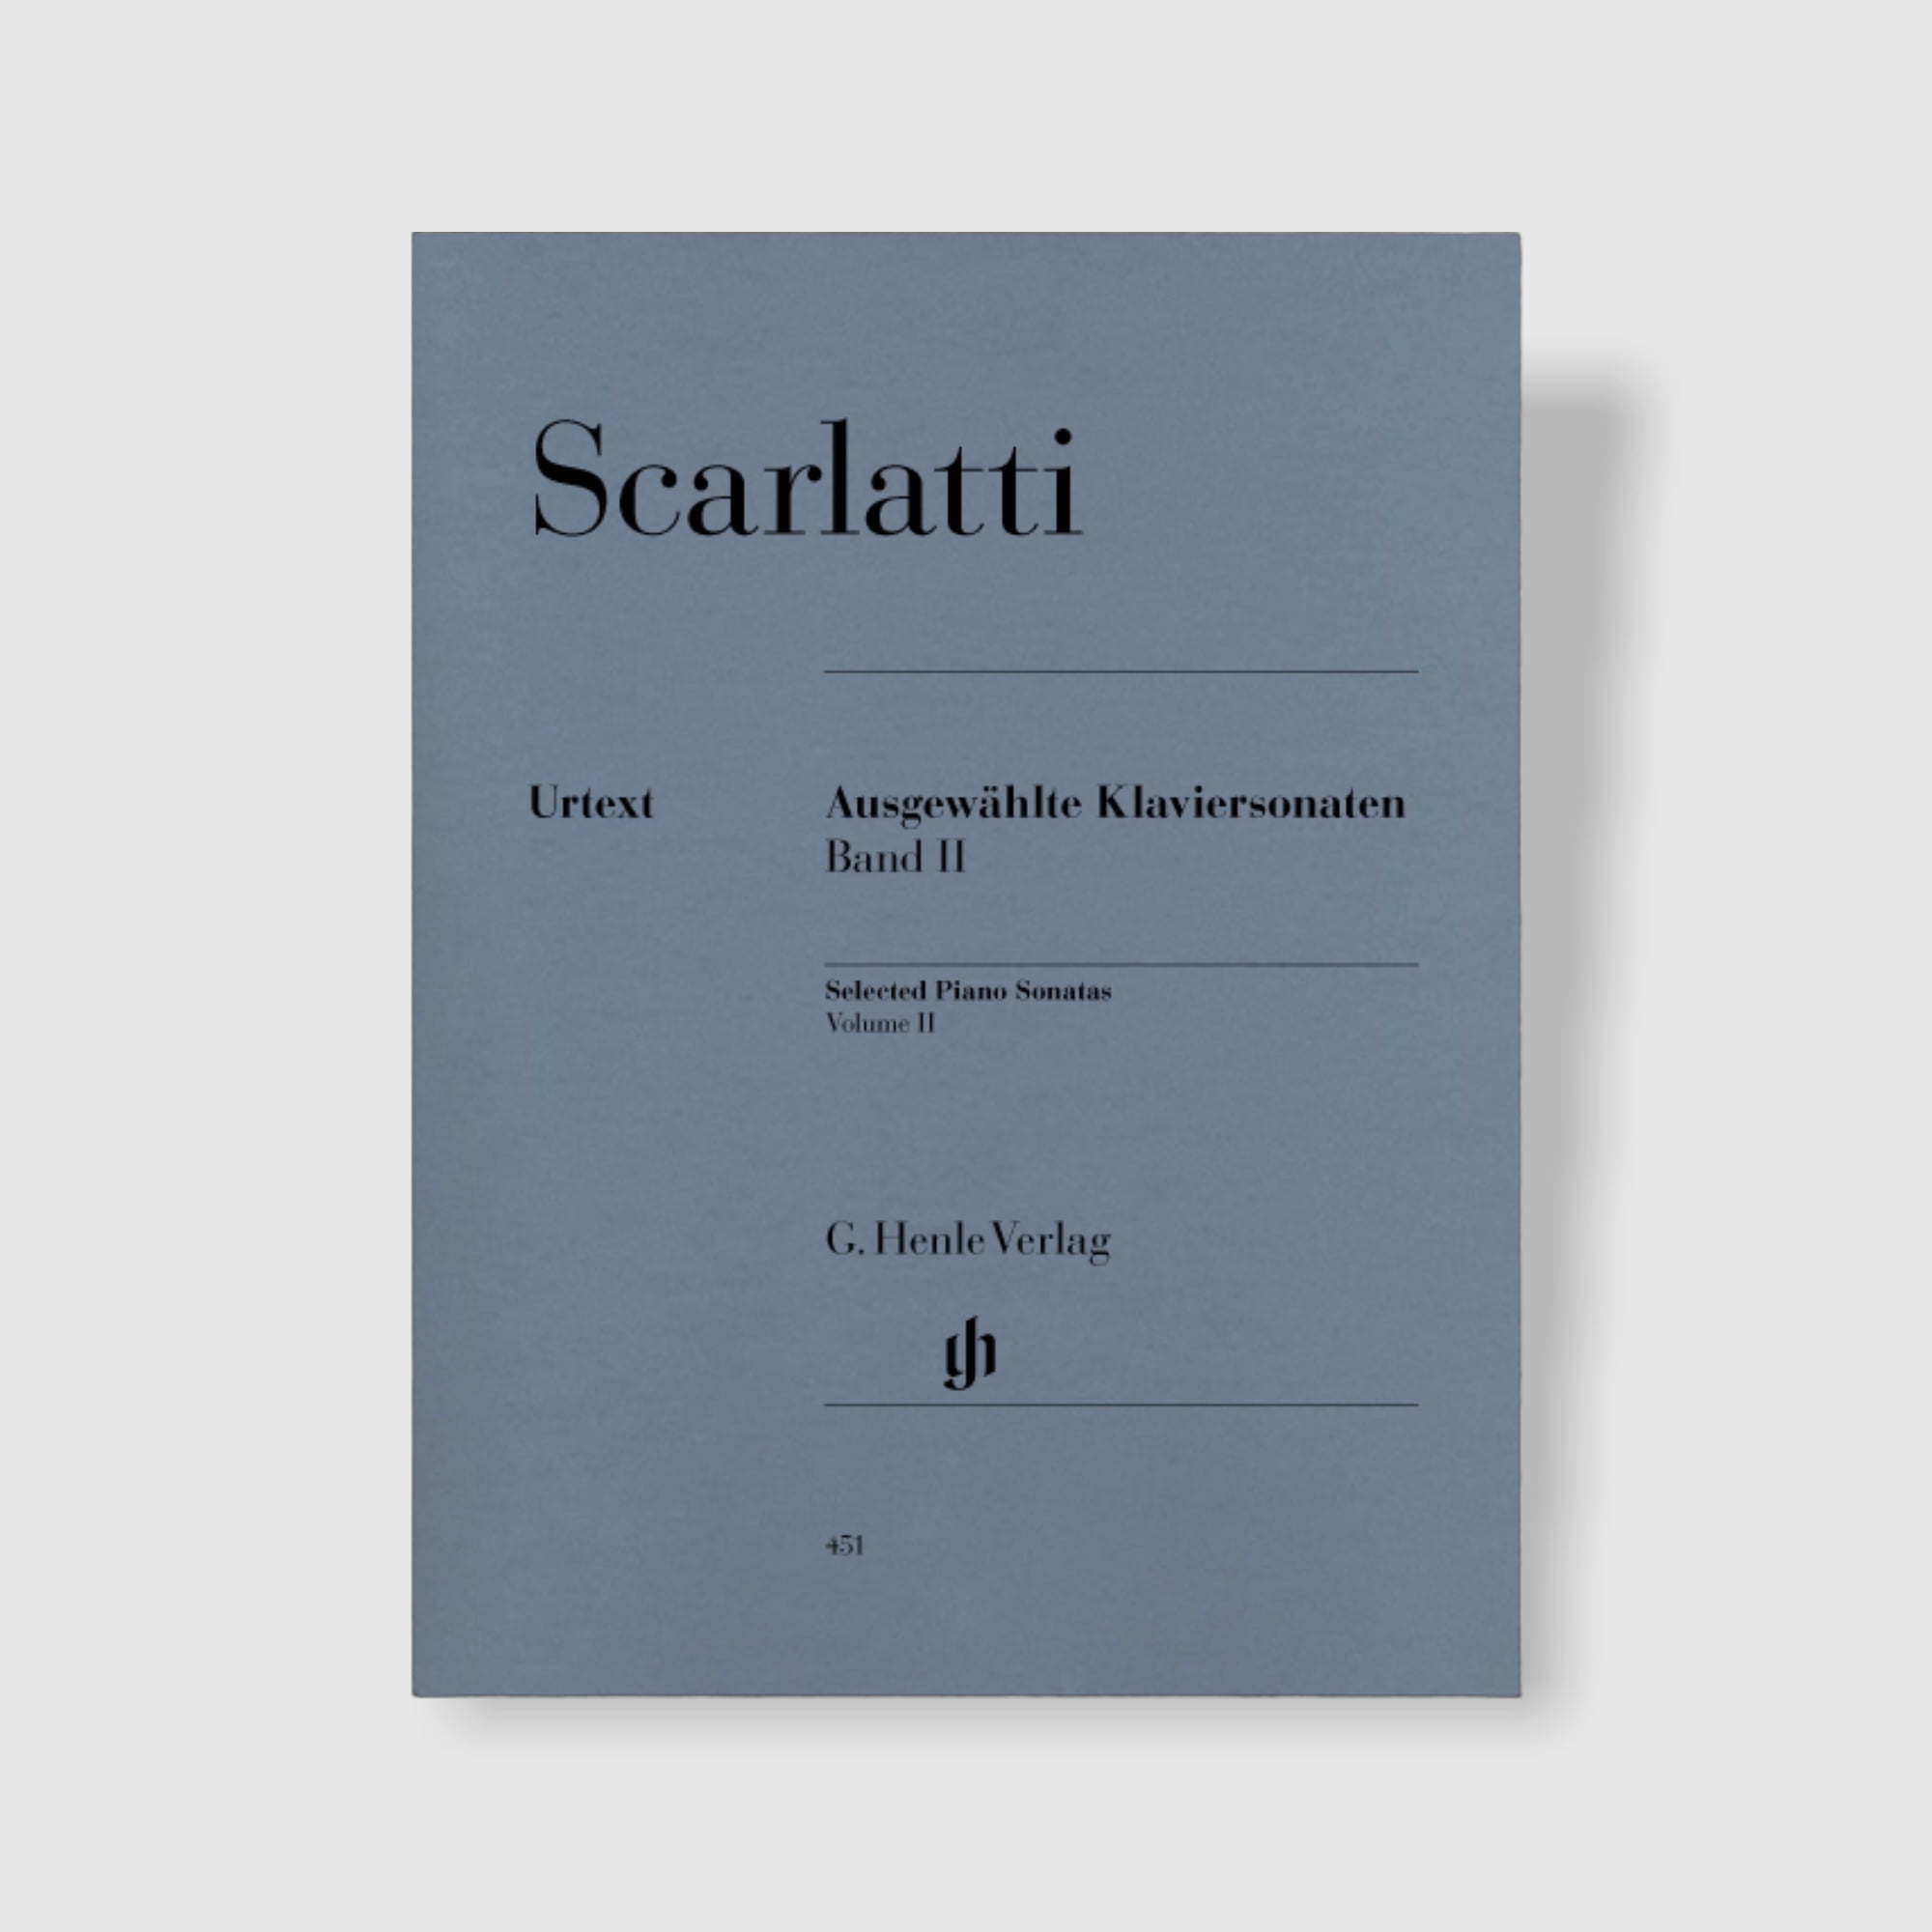 스카를라티 피아노 소나타, 모음곡 II